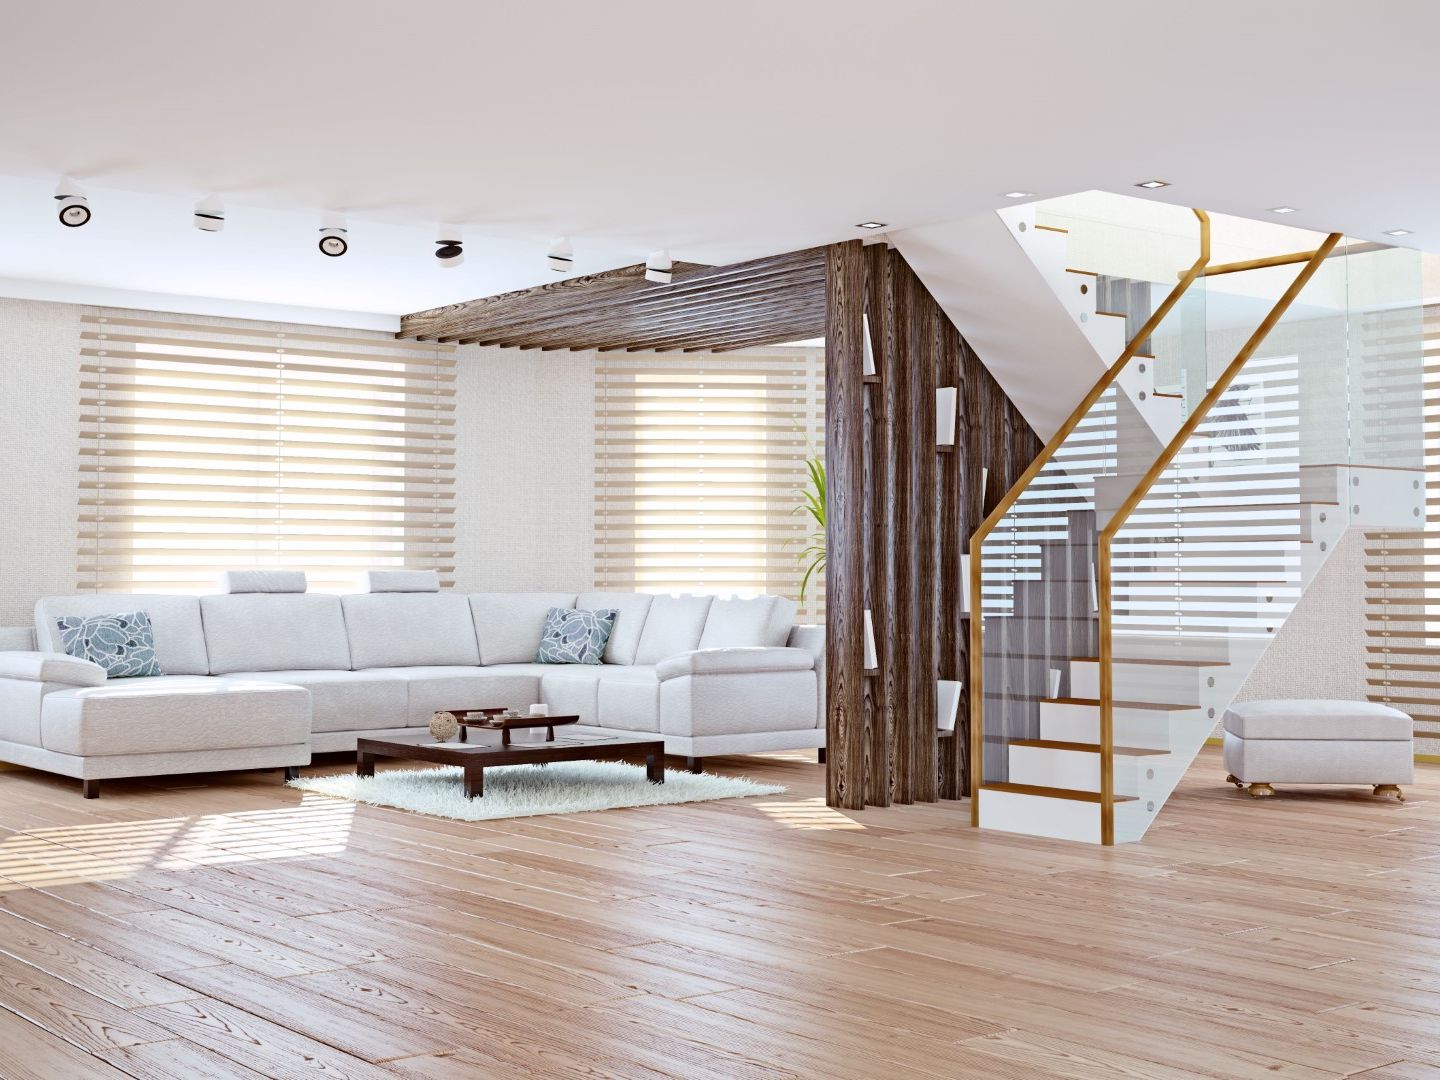 Modern living room interior. Contemporary design concept